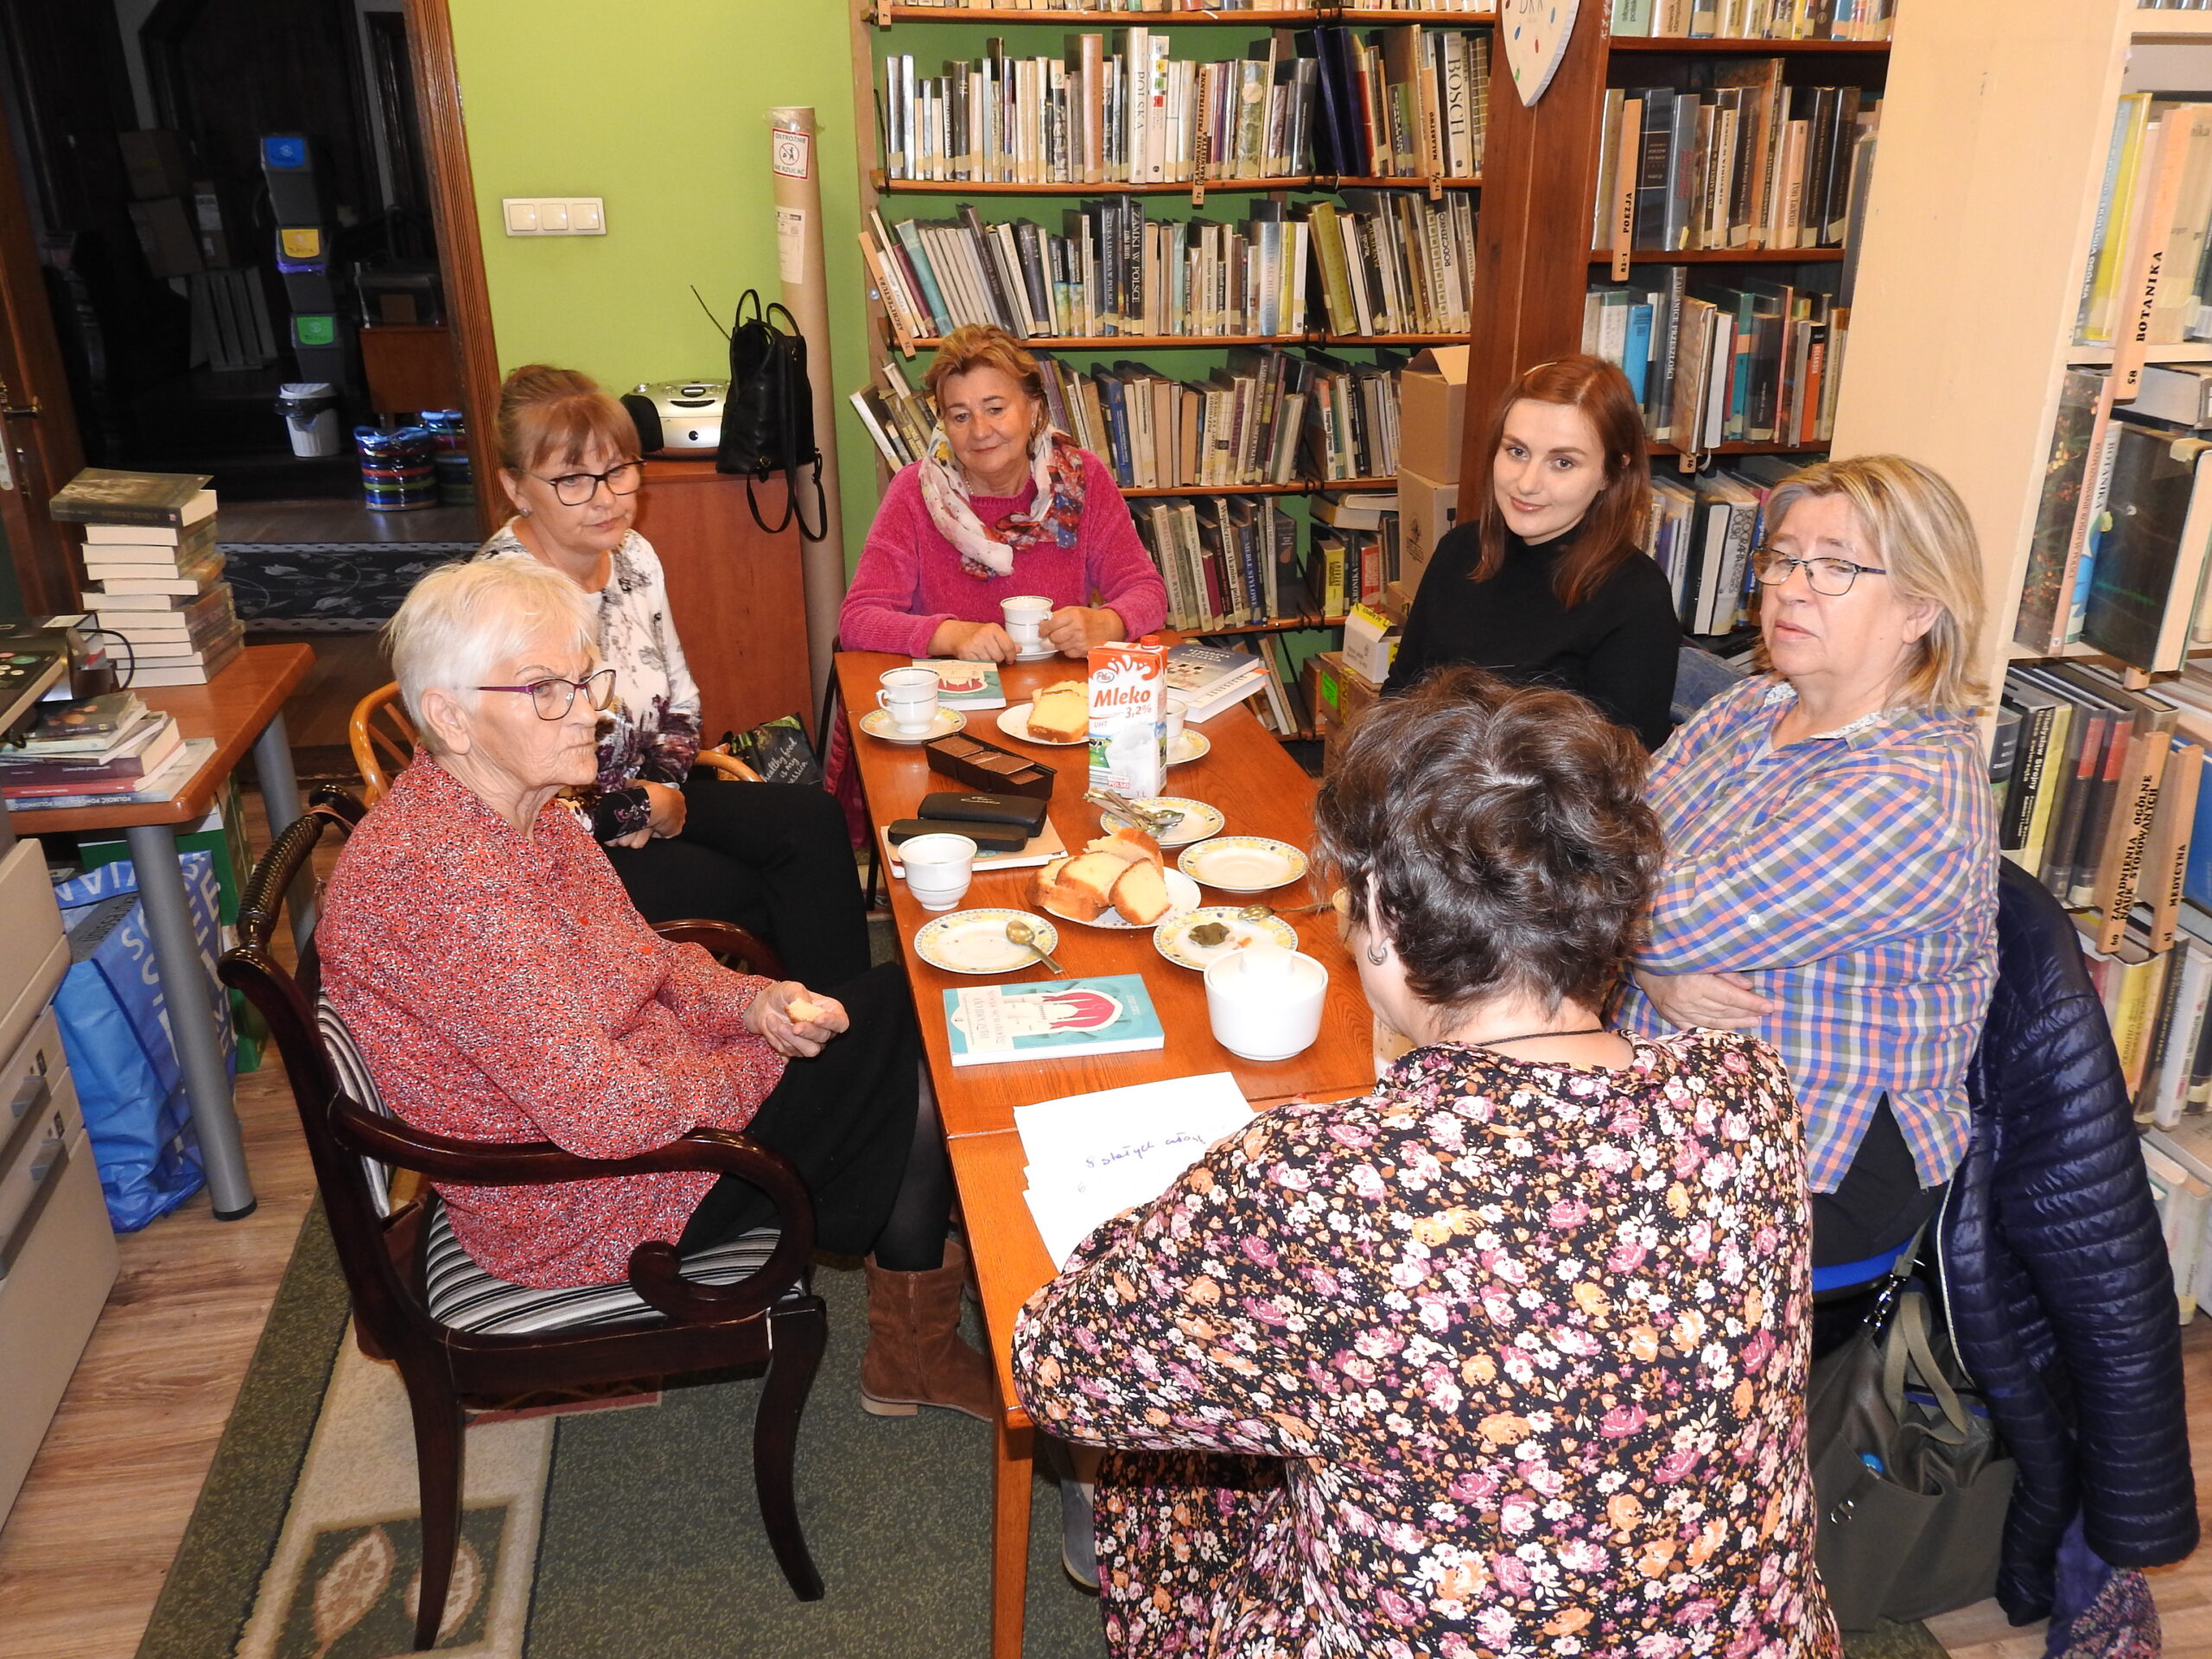 Moderatorka oraz członkinie Dyskusyjnego Klubu Książki(6 osób) siedzą przy stole i rozmawiają o książce. Na stole leżą ksiązki, stoja filiżanki z napojem, ciastka.